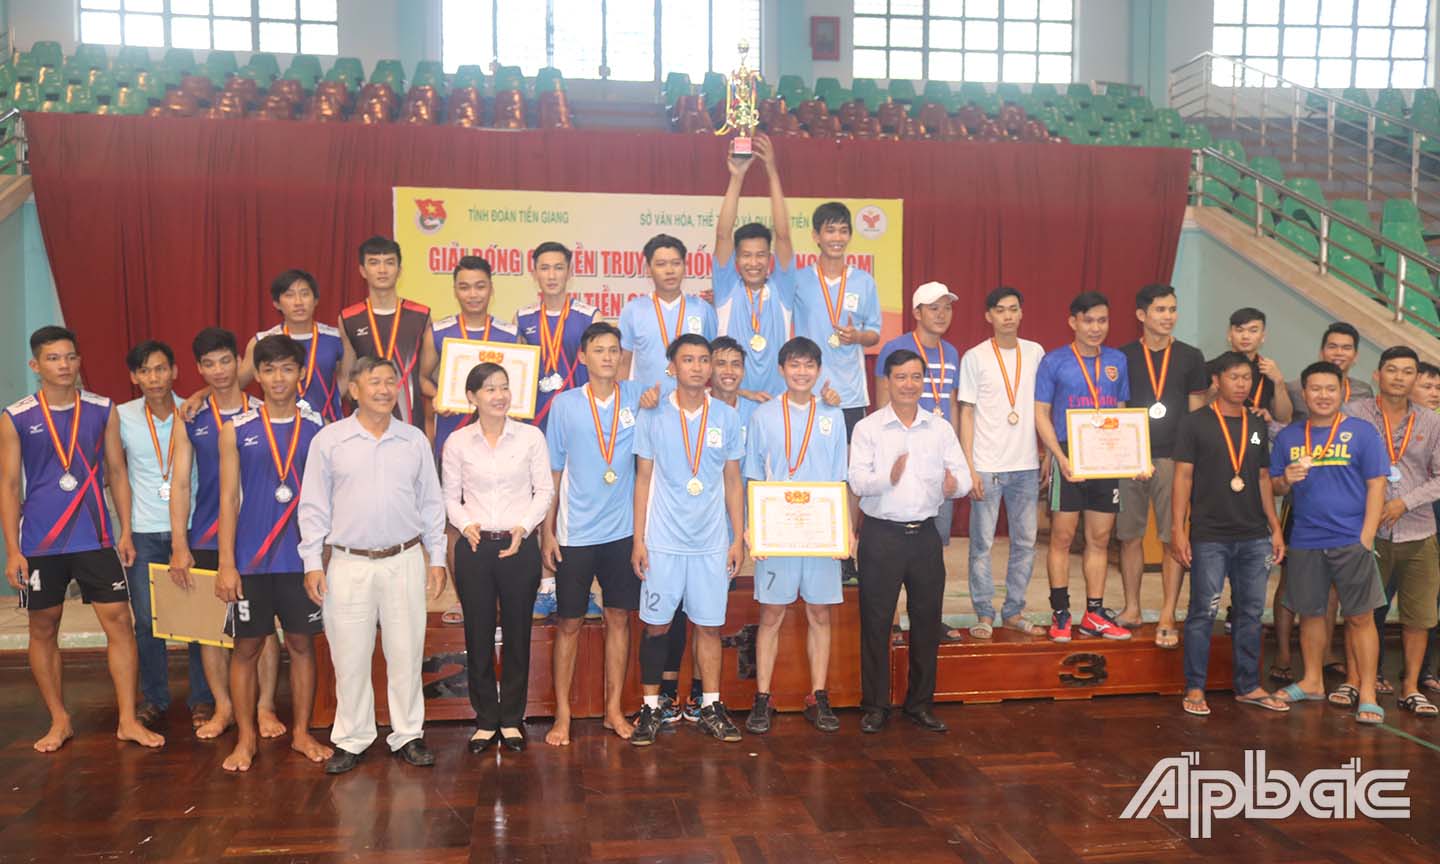 Trường Cao đẳng Tiền Giang xuất sắc đoạt giải Nhất.